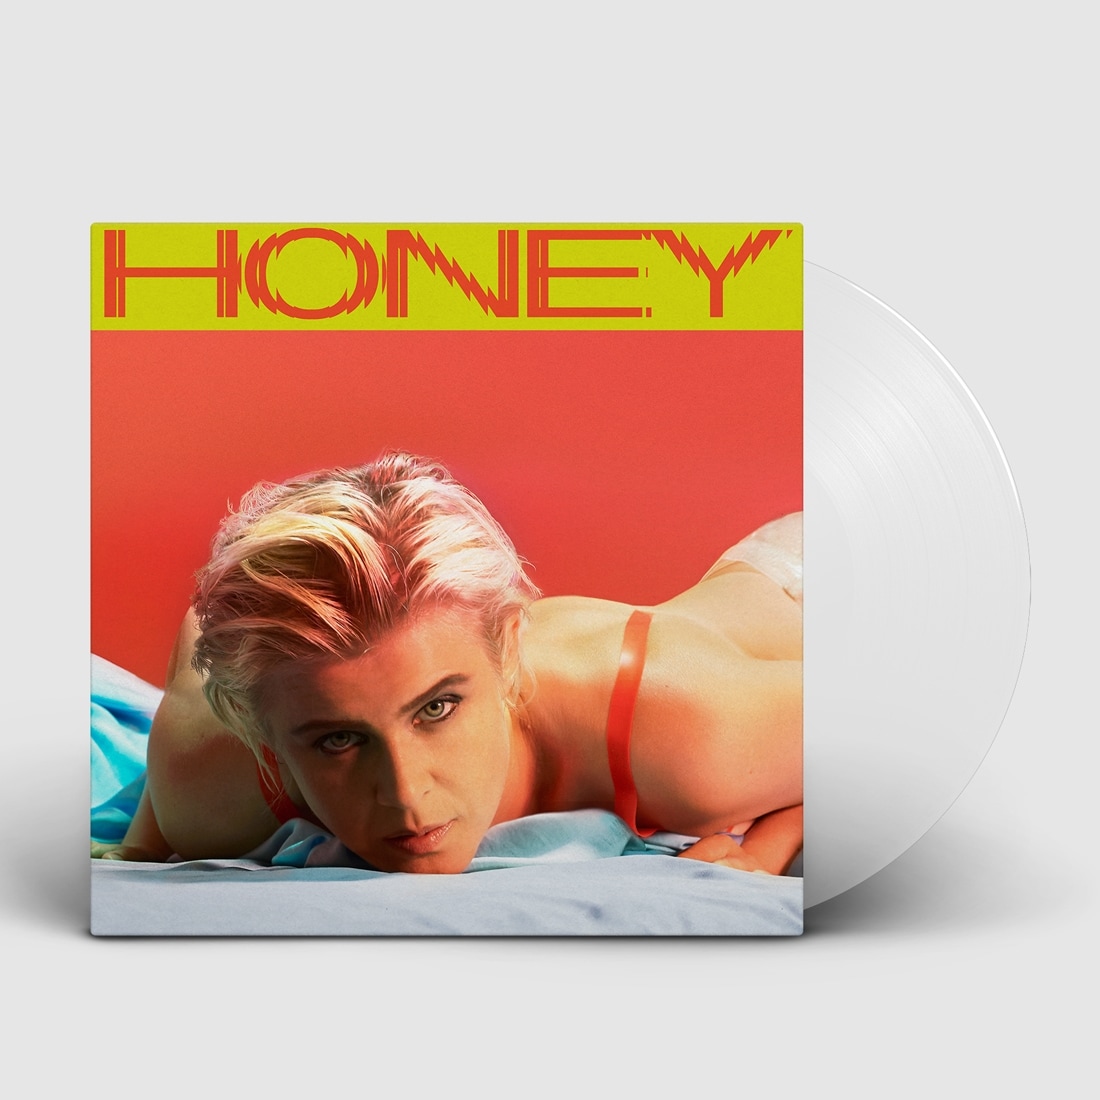 Альбом развлечение. Robyn "Honey". Solar Honey обложка. Robyn Music album. Tupelo Honey обложка композитор.